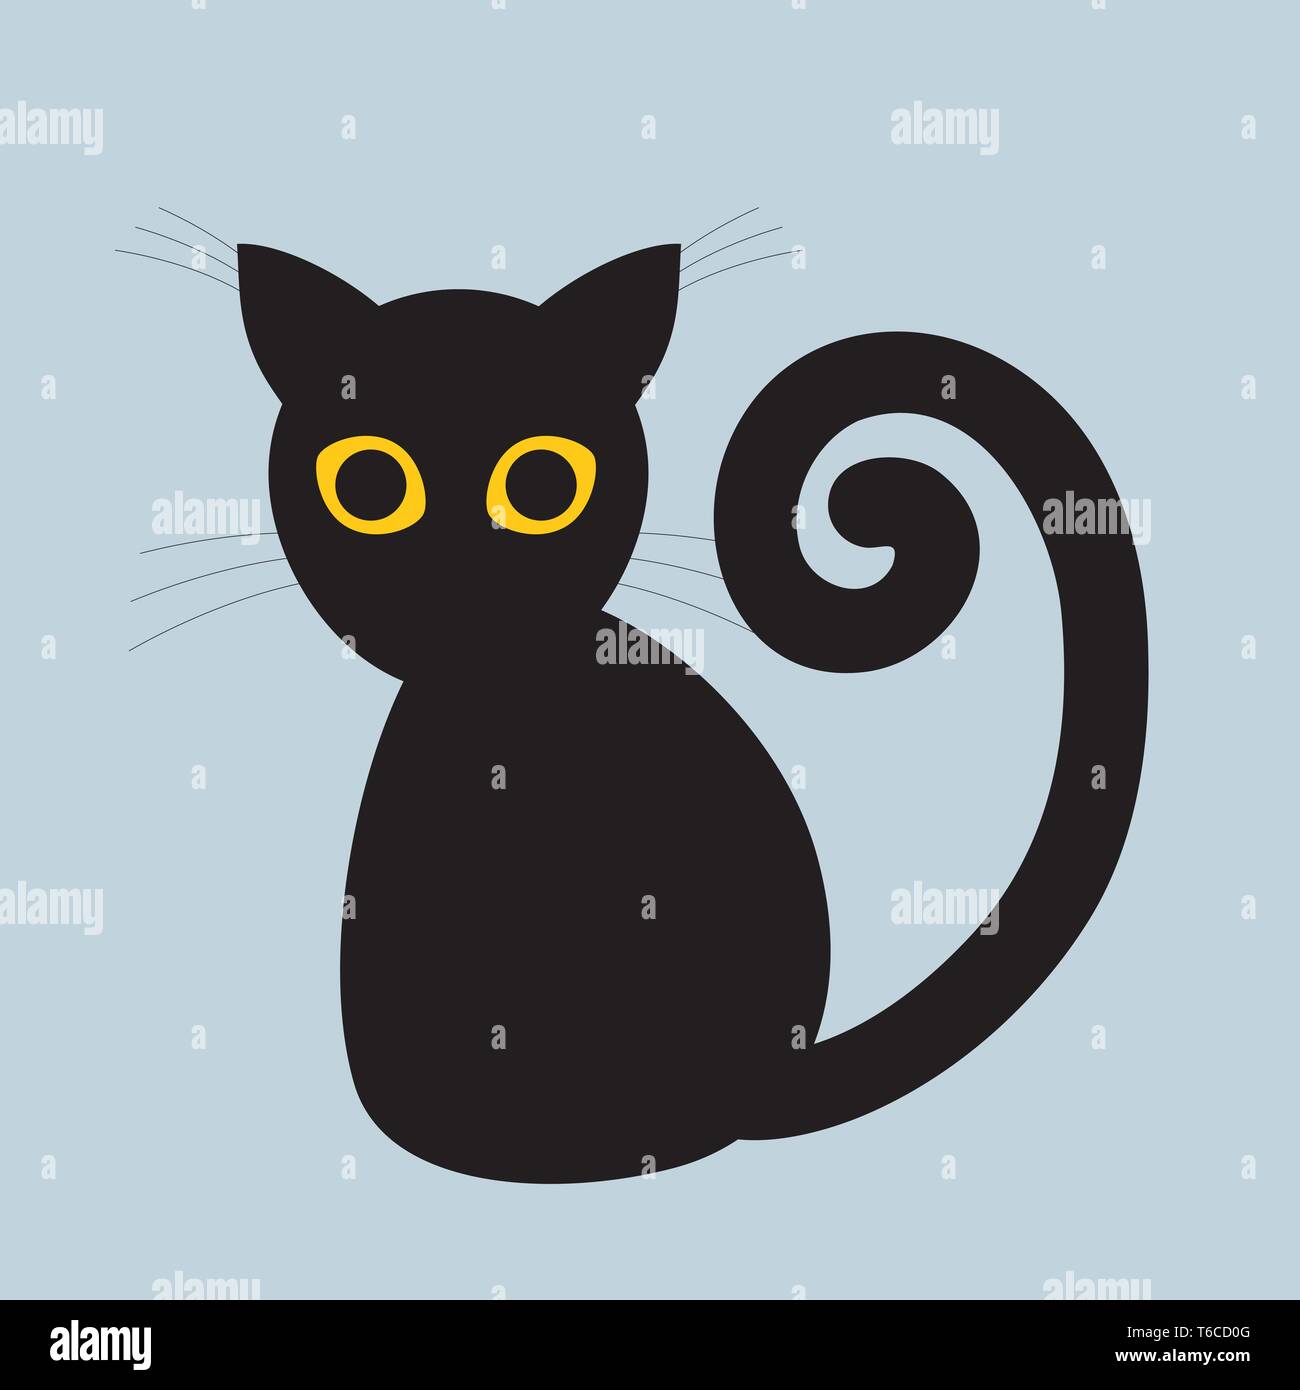 Una silhouette semplice disegno di un gatto nero con gli occhi gialli  Immagine e Vettoriale - Alamy